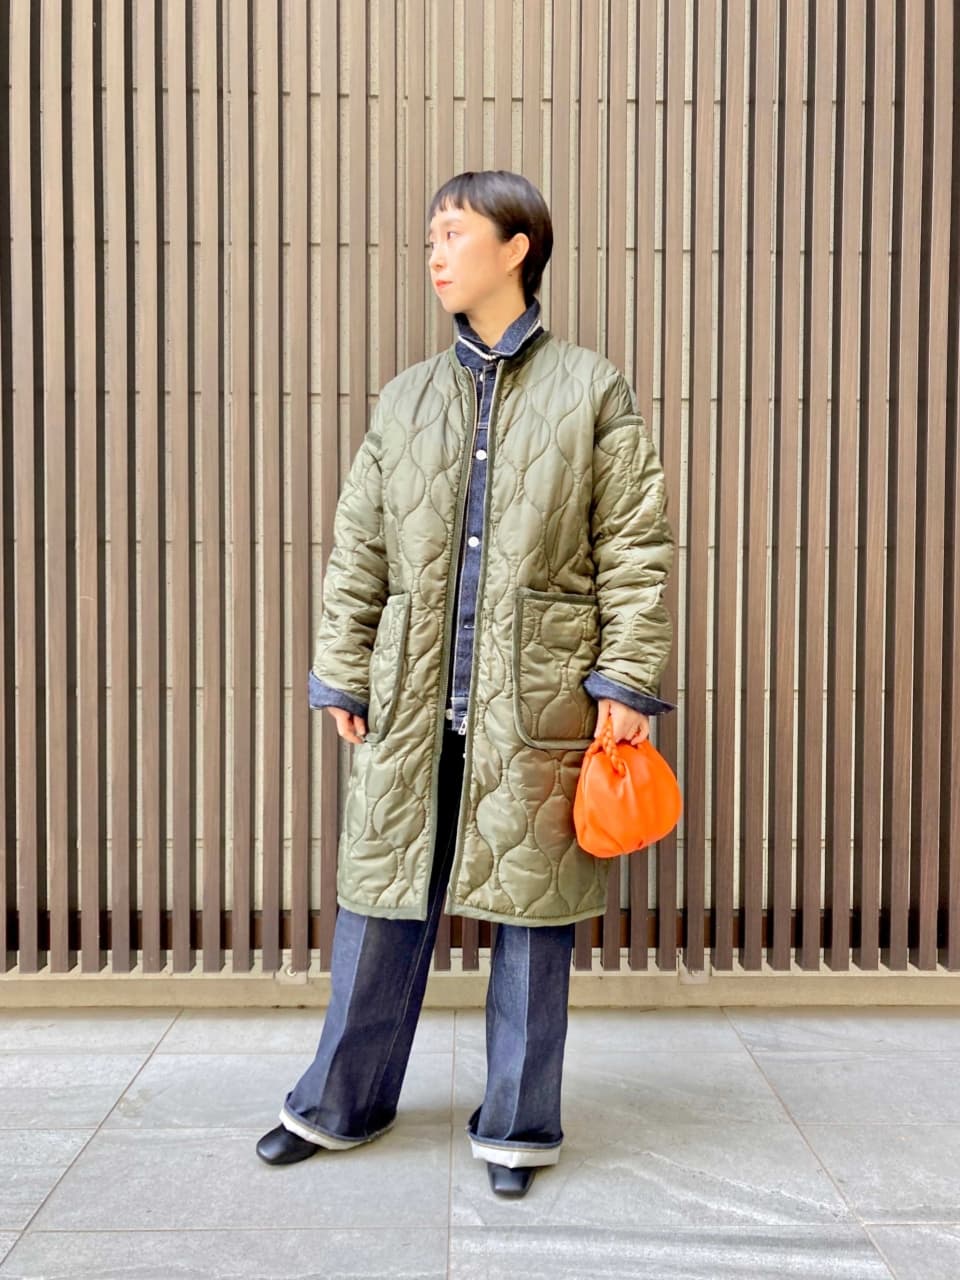 戸塚友理さんが着るシンゾーンのコート